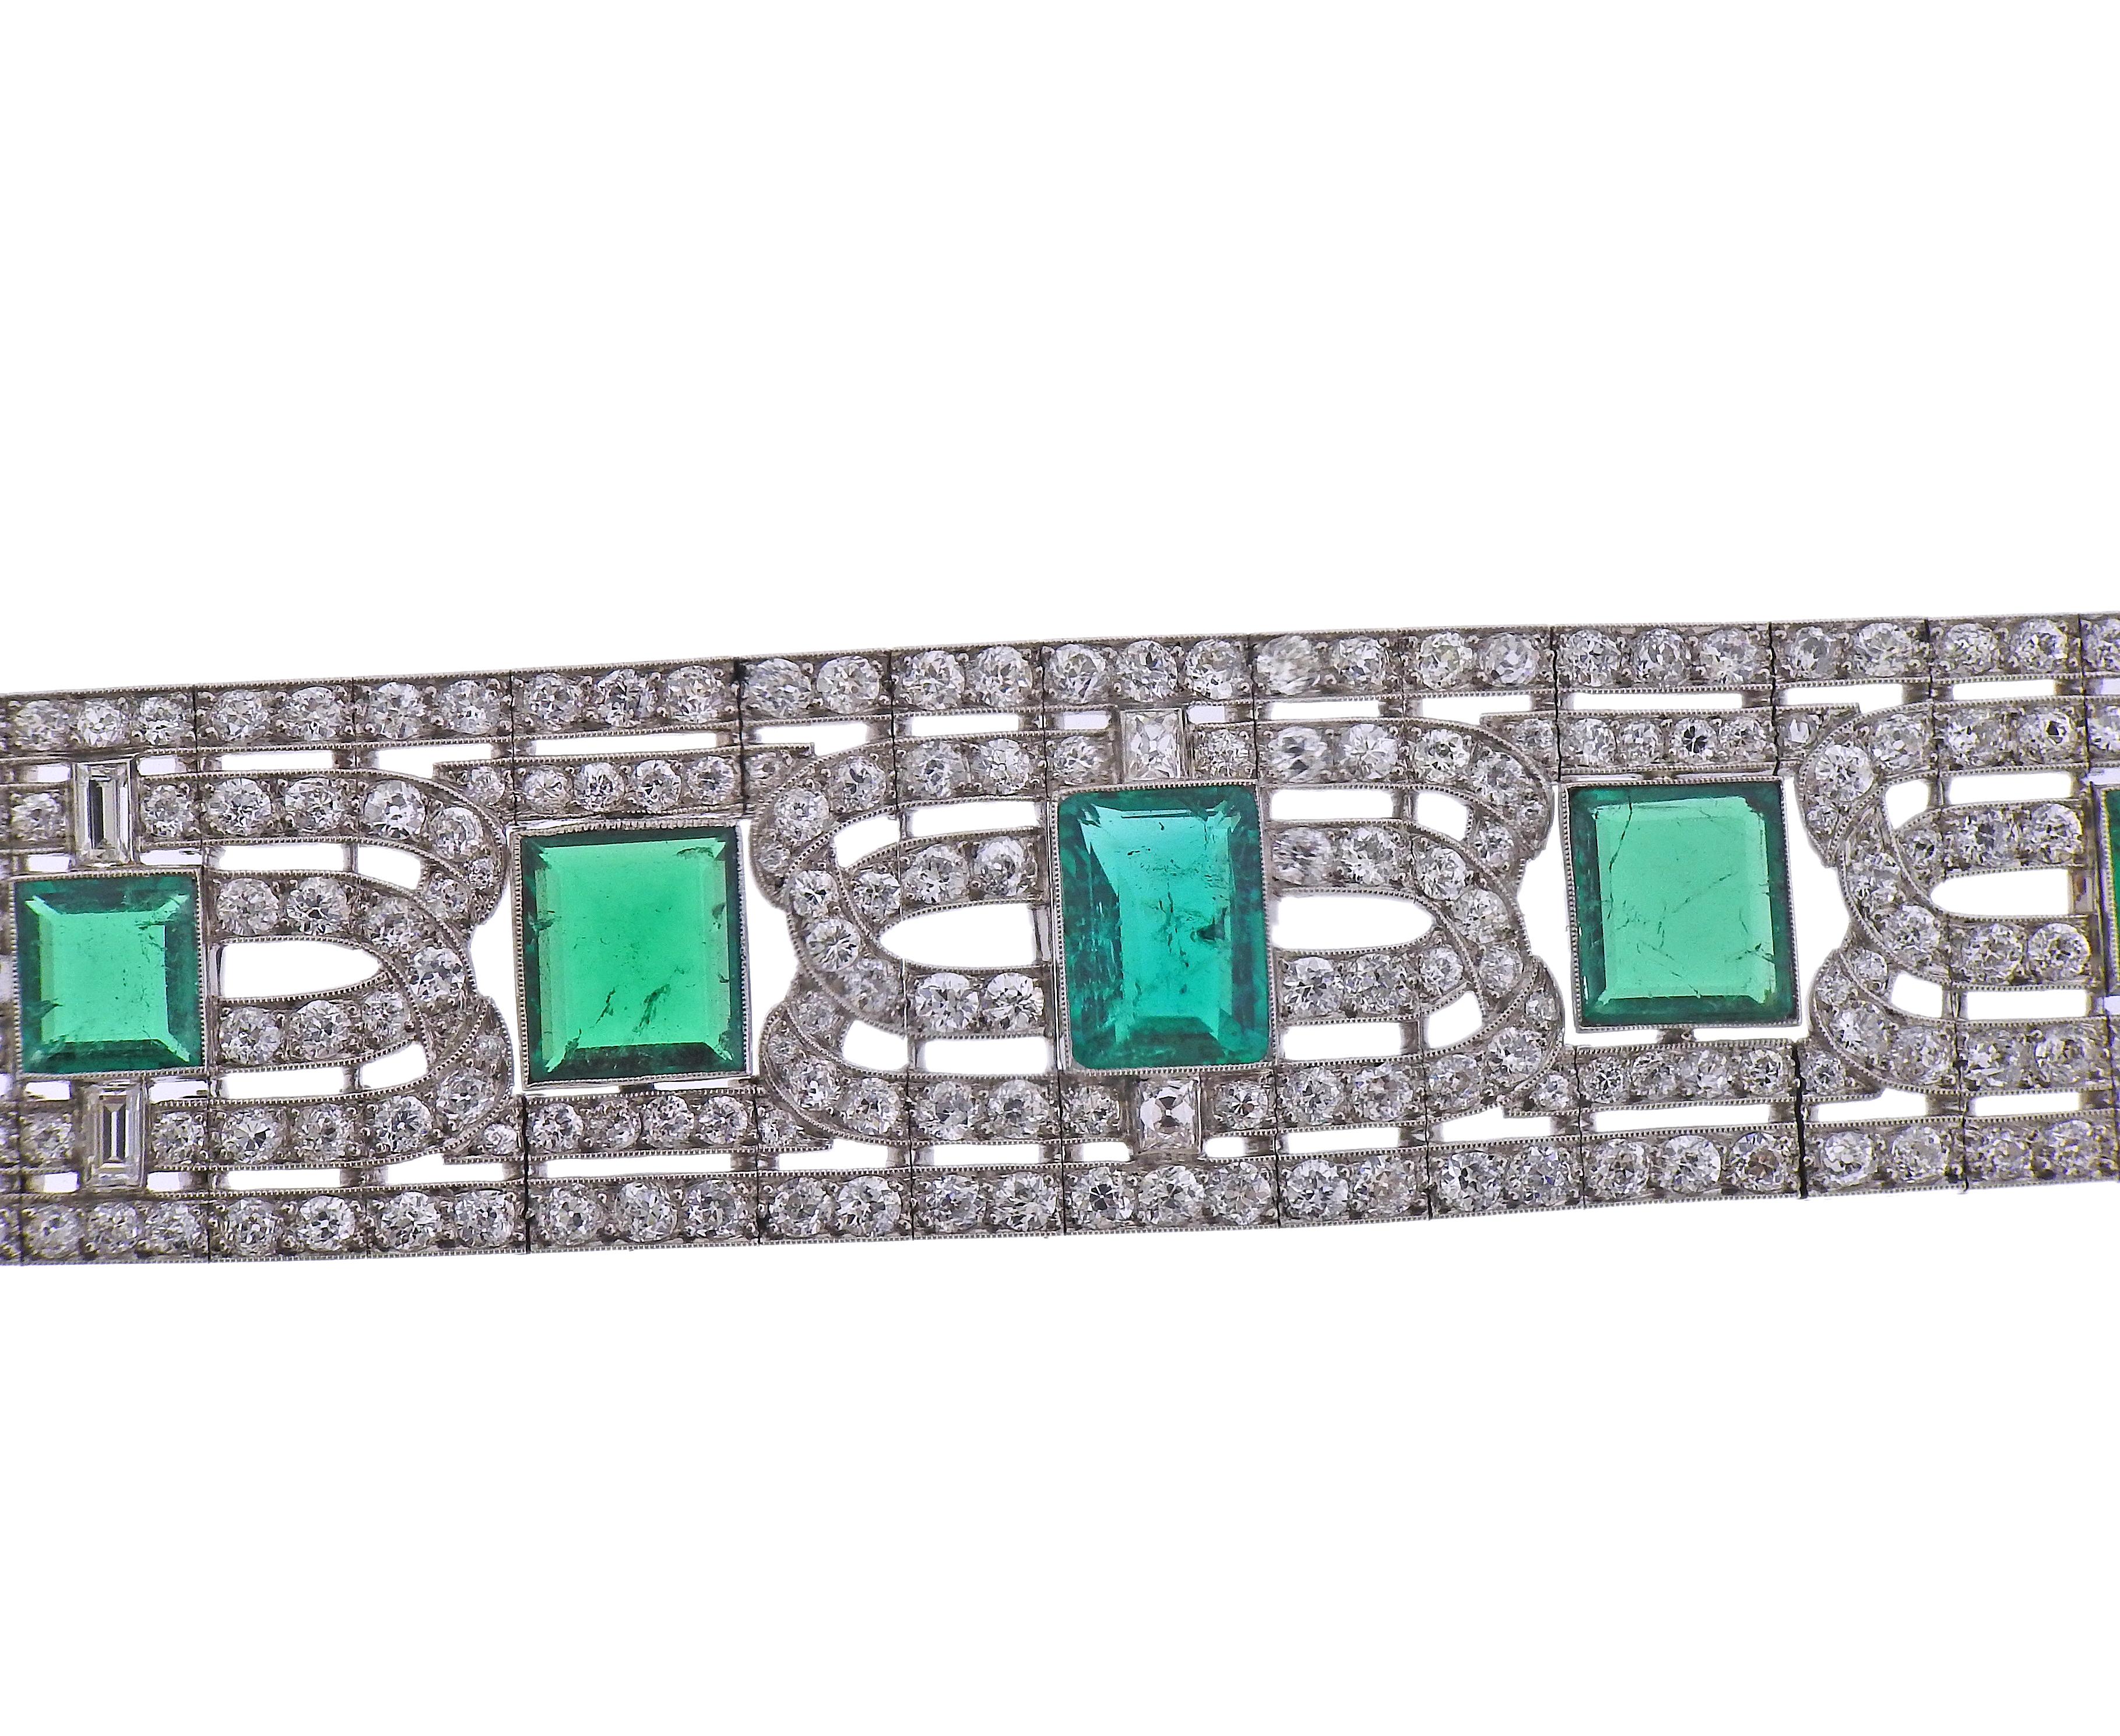 Bedeutendes Platinarmband mit zehn AGI-zertifizierten kolumbianischen Smaragden von ca. 10,8 x 7,8 x 4,45 mm bis 6,5 x 6,1 2,44 mm. Umgeben von insgesamt ca.  17 Karat in Diamanten. Der Armreif ist 7 1/8